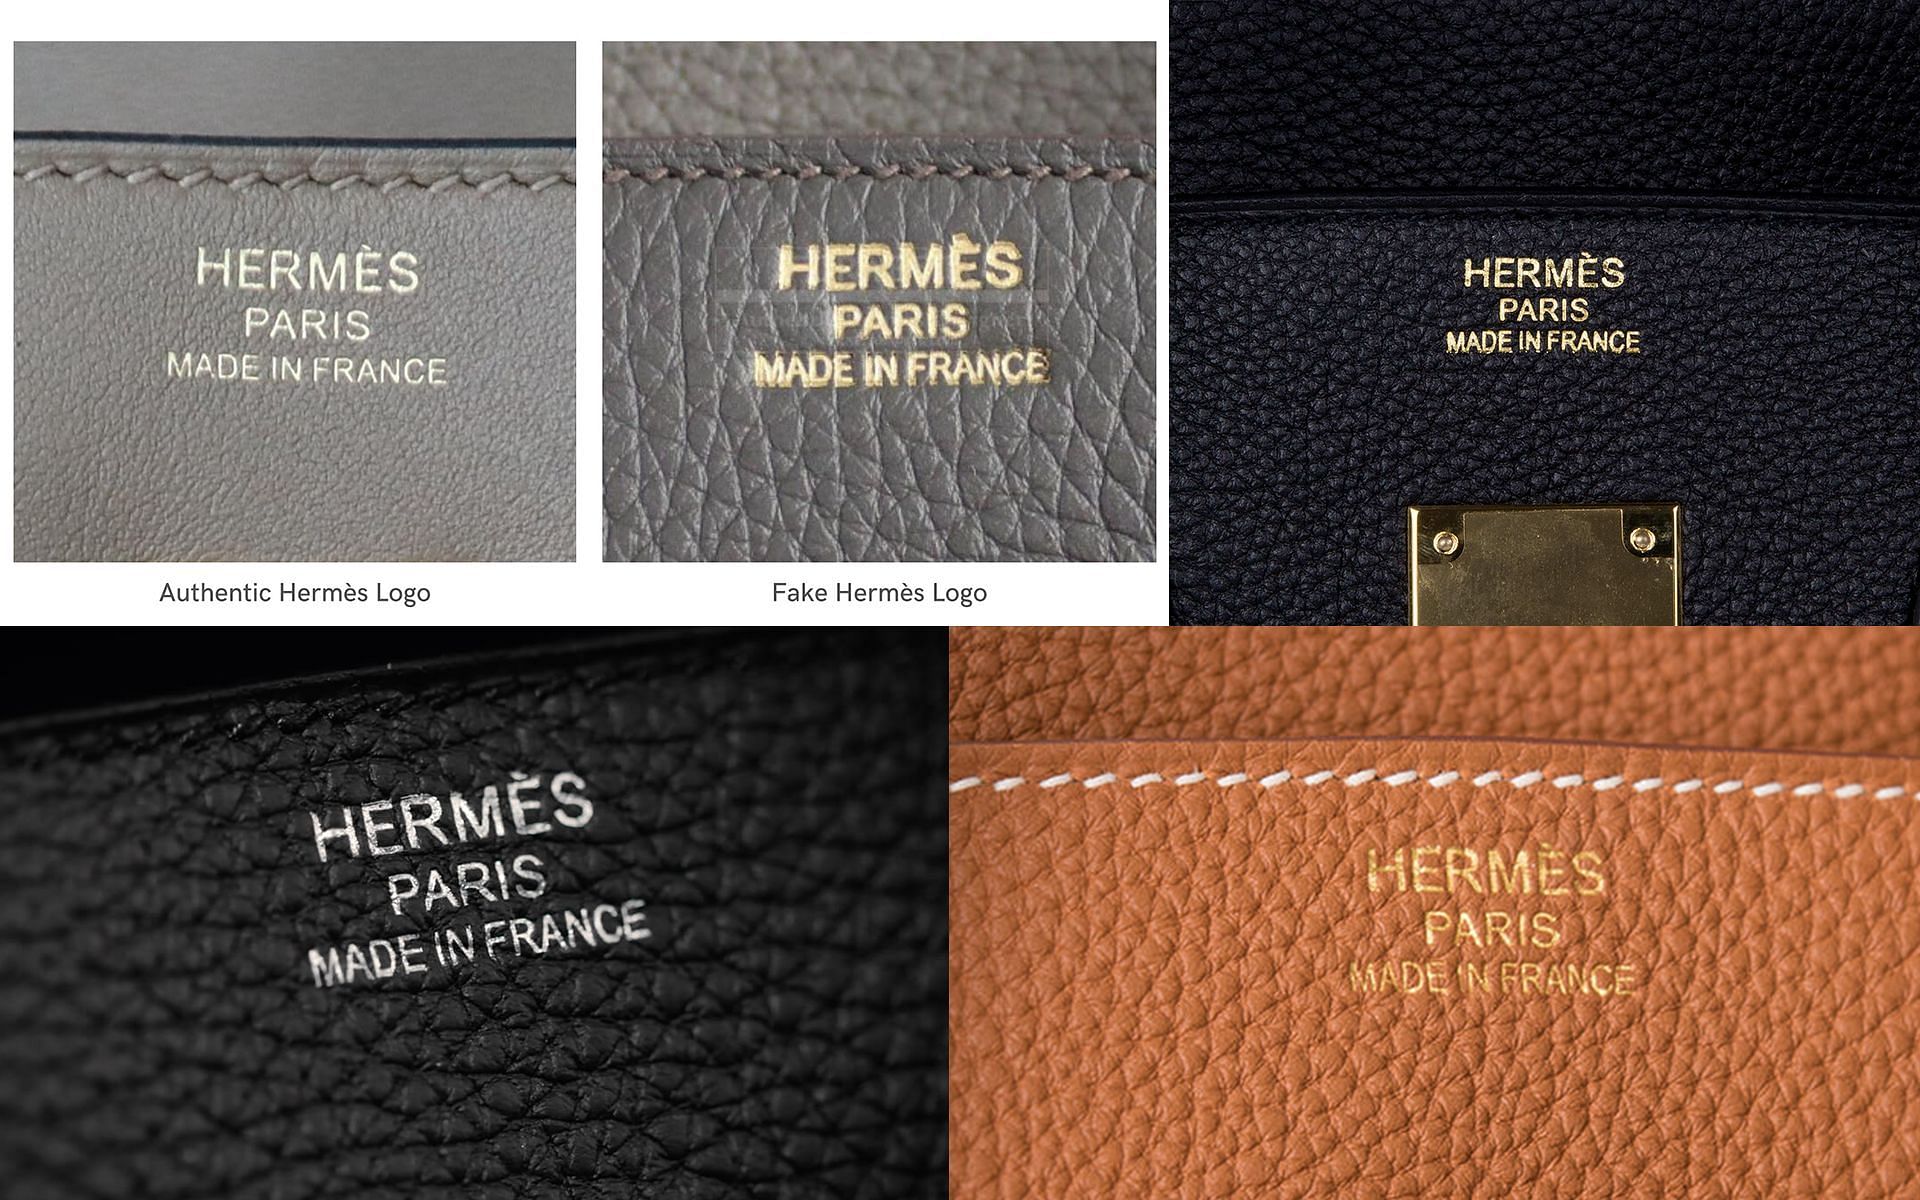 How to authenticate a Hermès Birkin bag? Sarah Jessica Parker